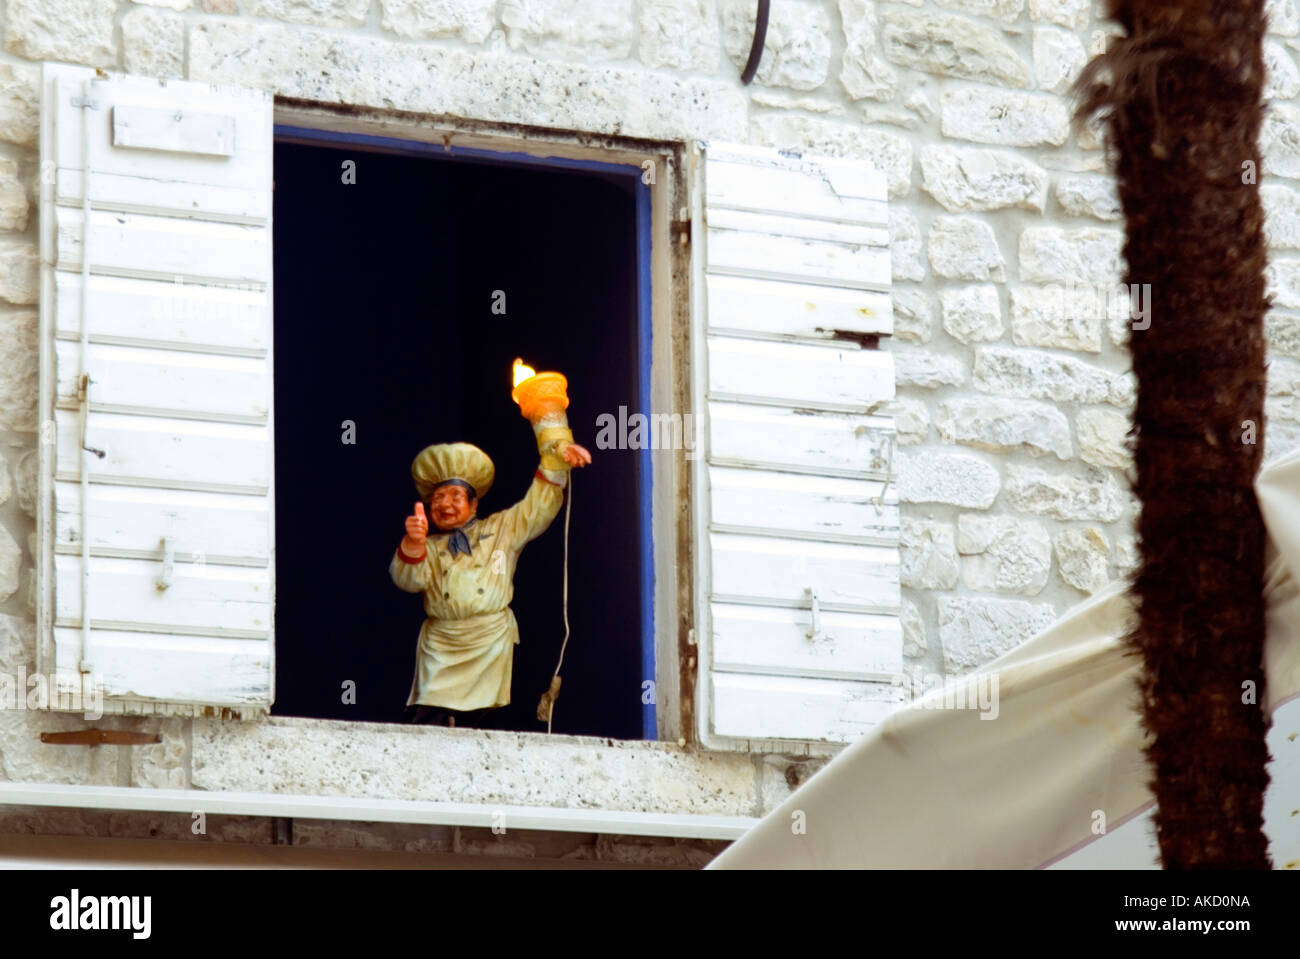 L' Europa sudorientale, Croazia, Dalmazia, Trogir, chef statuetta in finestra aperta con persiane di legno Foto Stock